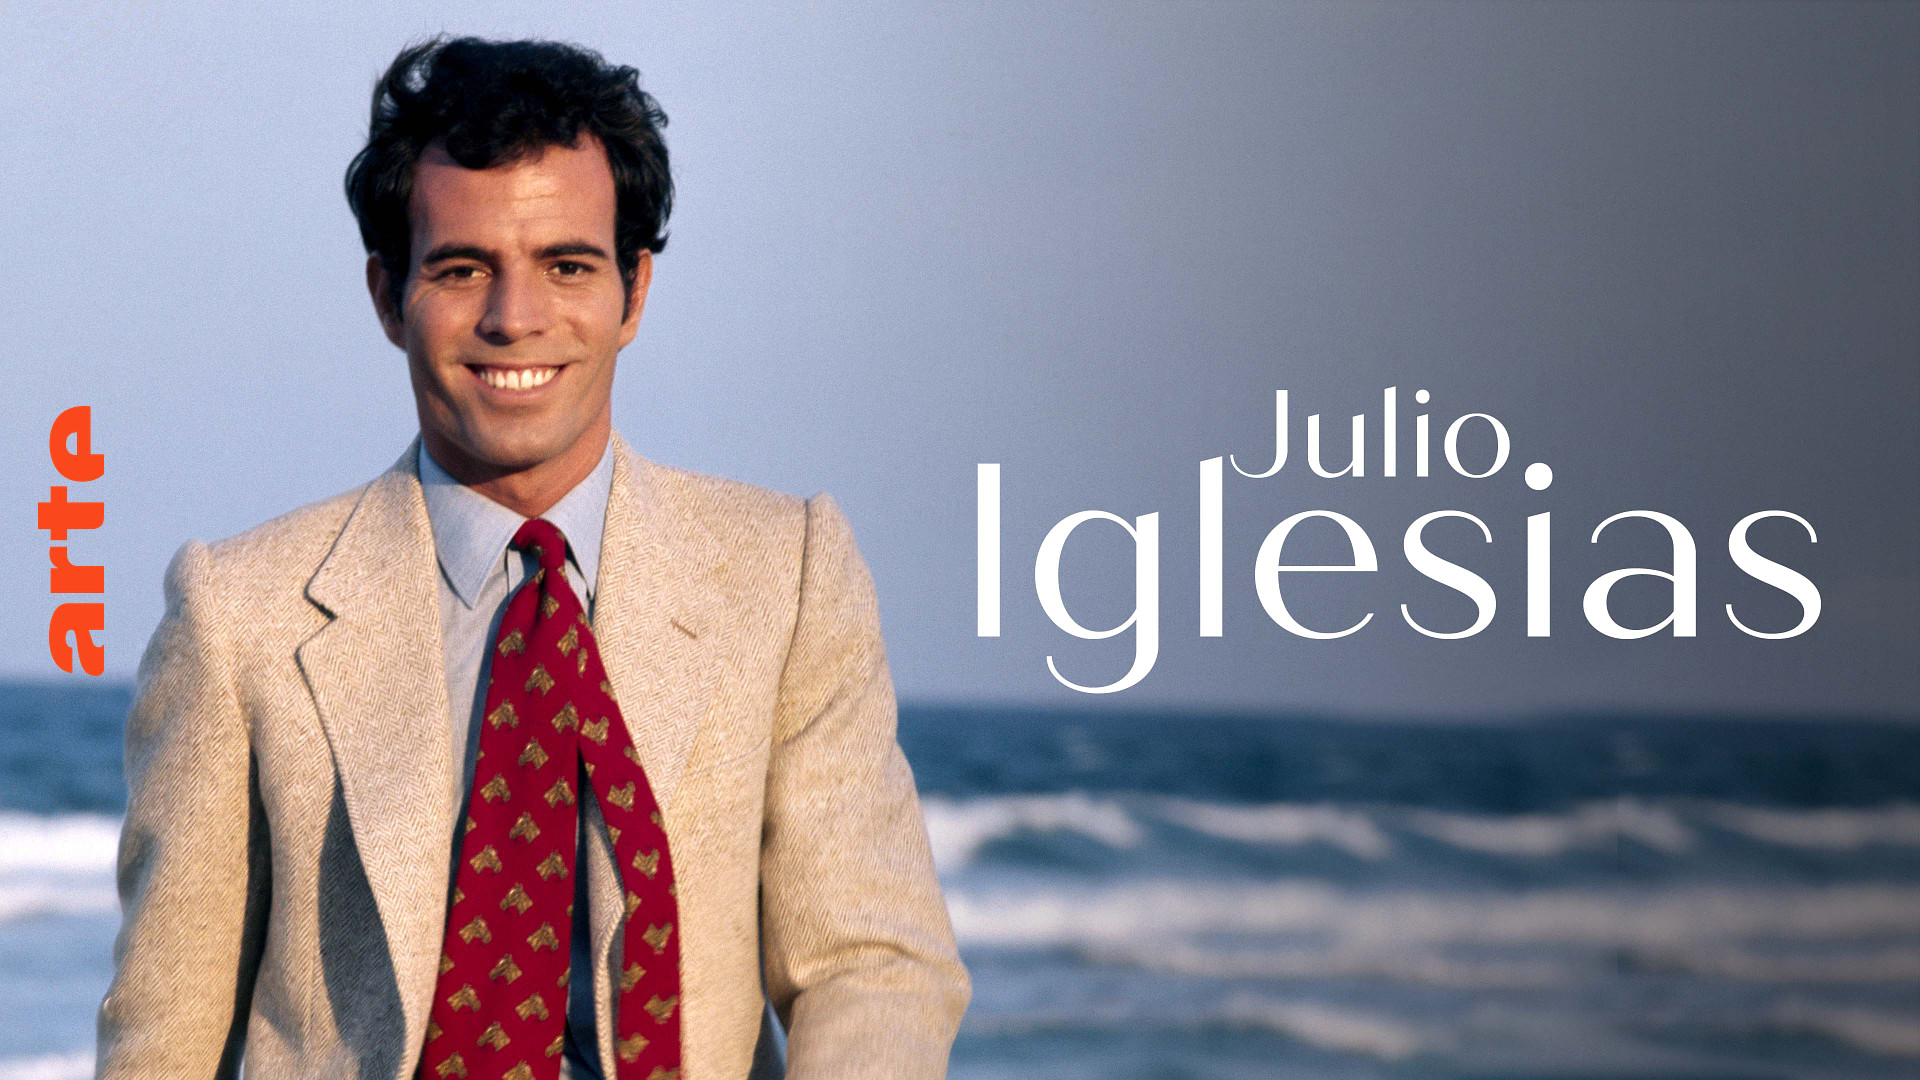 Julio Iglesias: Mit Charme zum Weltstar